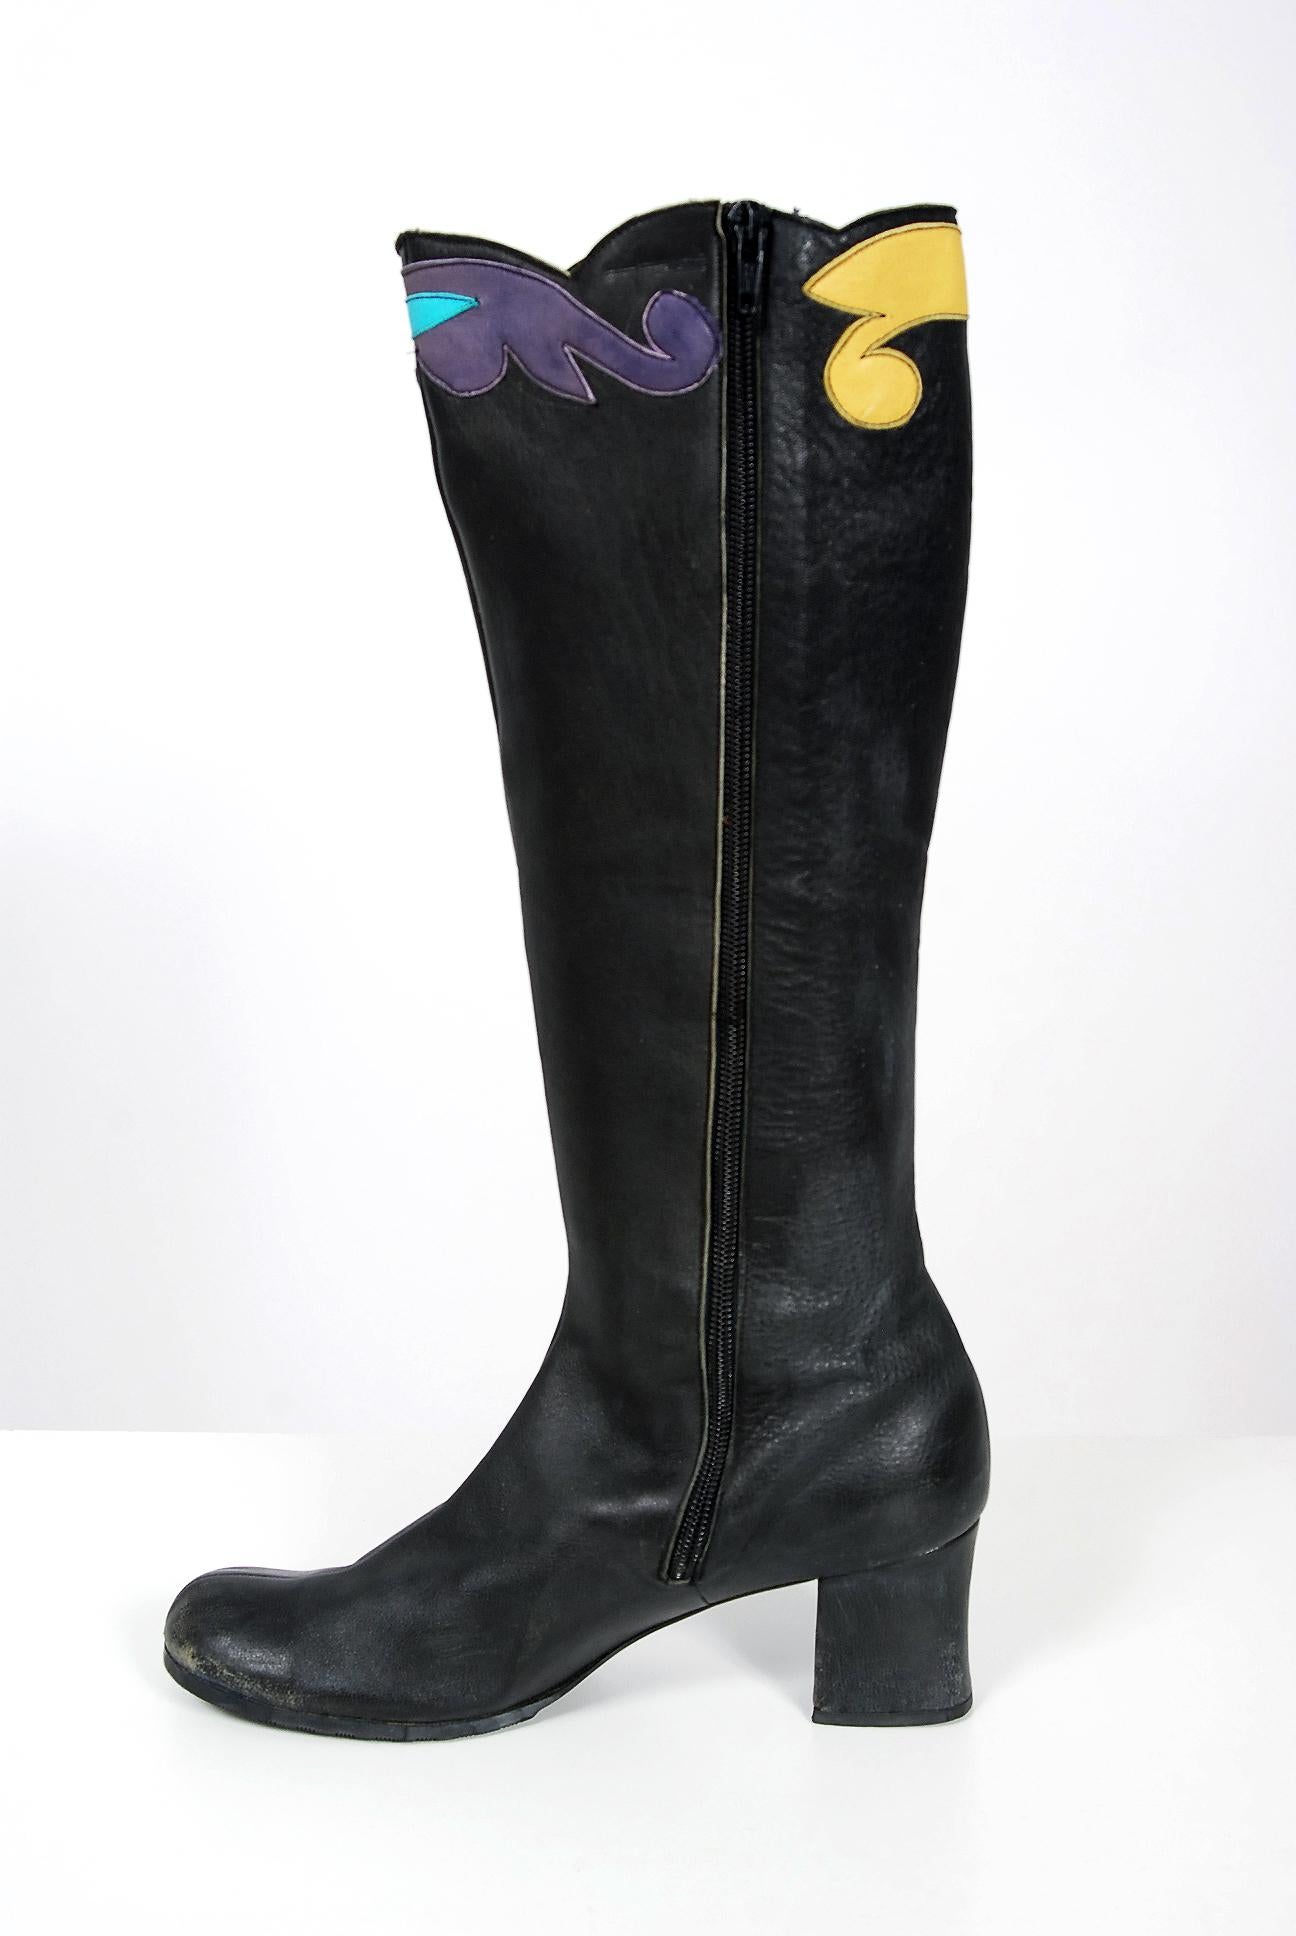 Vintage 1970s Karina of Spain Floral Applique Black Leather Knee-High Mod Boots  For Sale 1